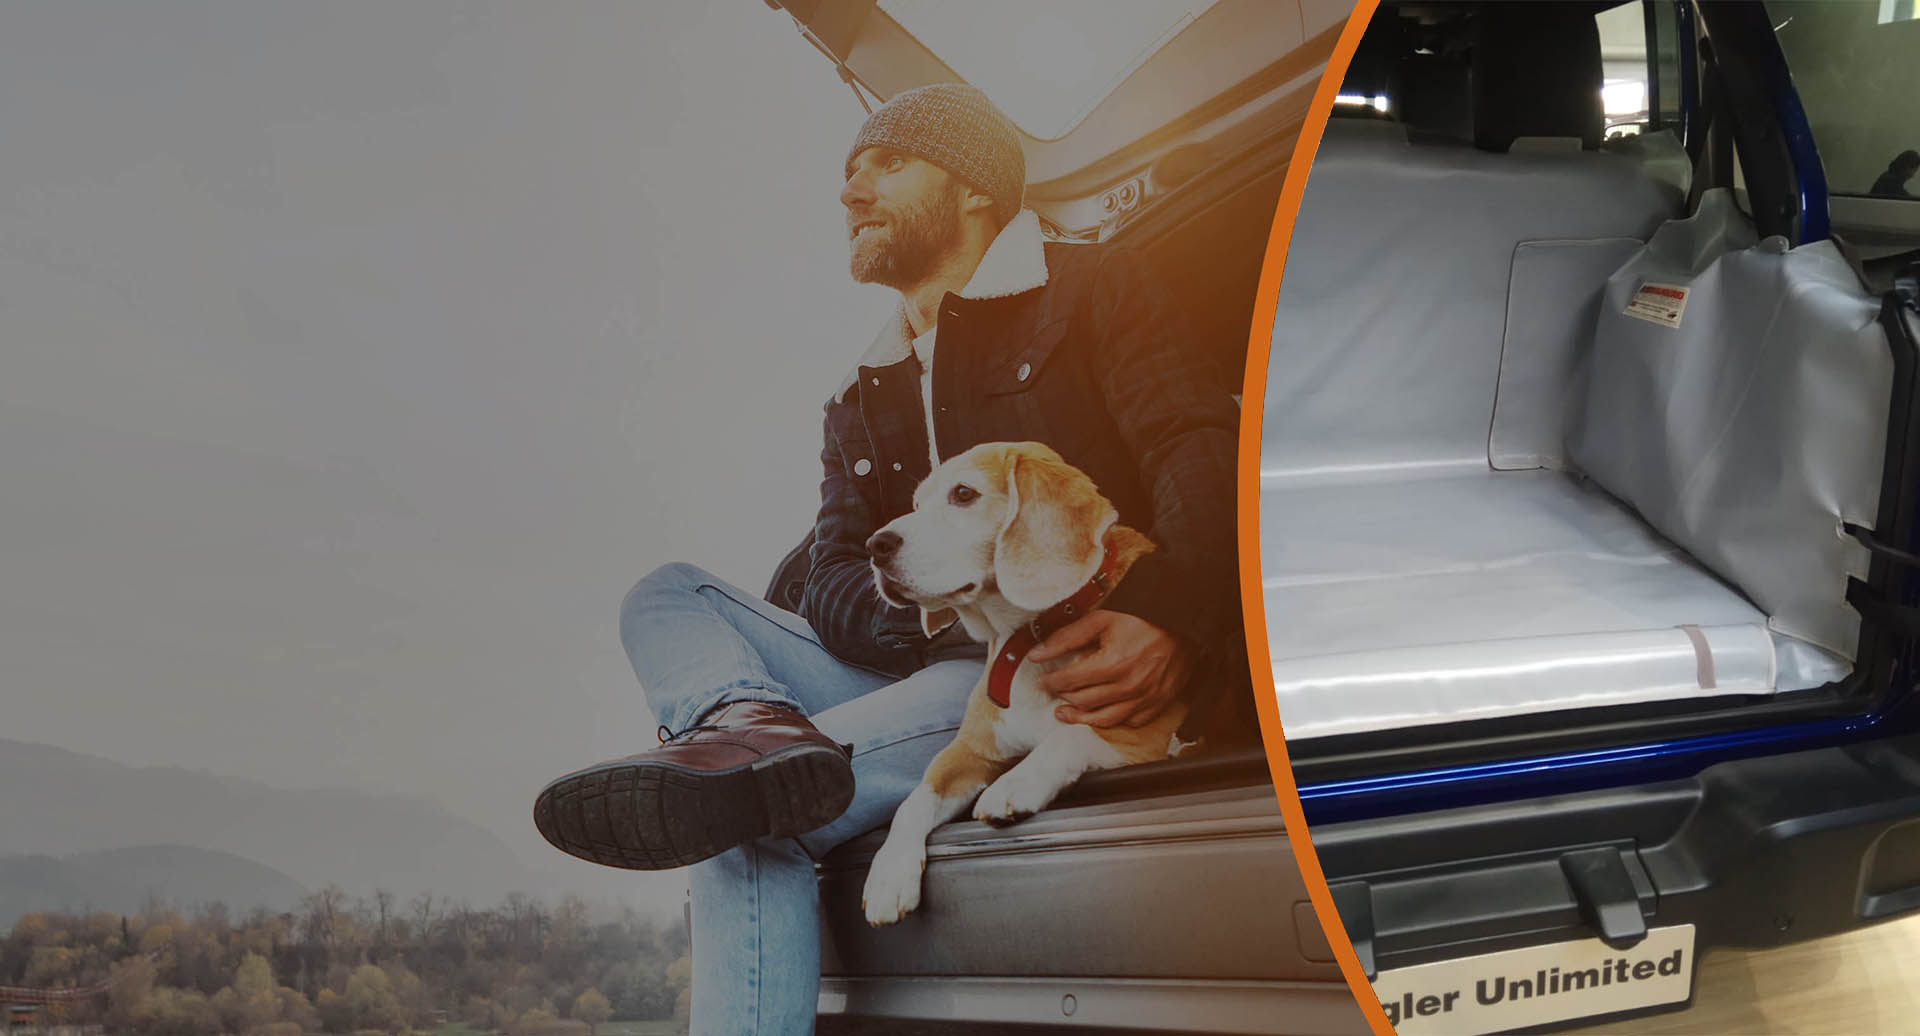 Telo bagagliaio per Corsa protezione baule portabagagli cane in auto pacchi  con